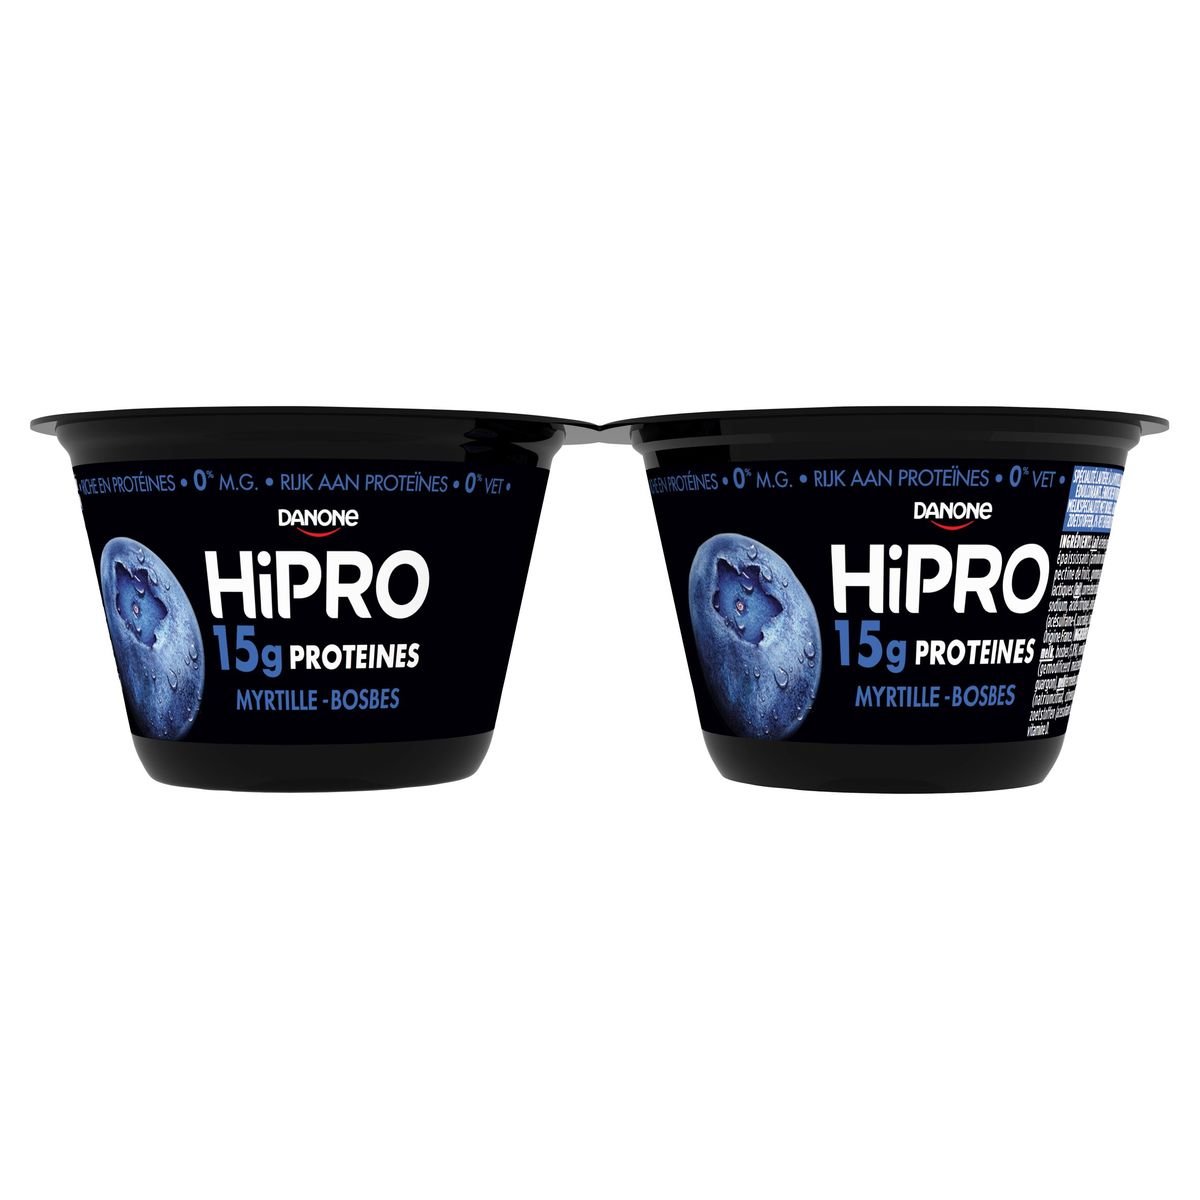 HiPRO Melkproducten 15 g Bosbessmaak Proteïnes 0% vet 2x 160g